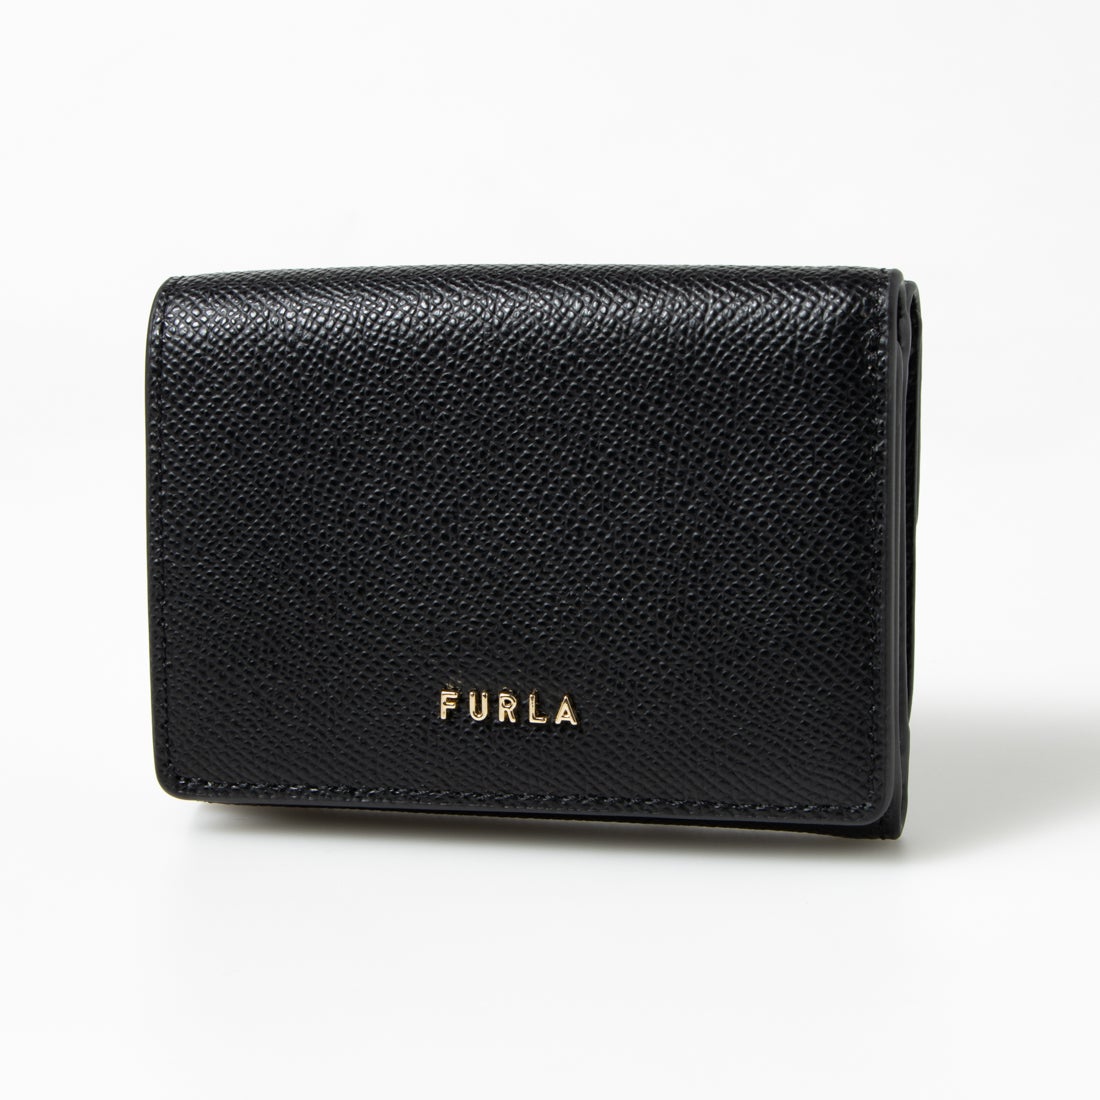 FURLA 財布ファッション小物